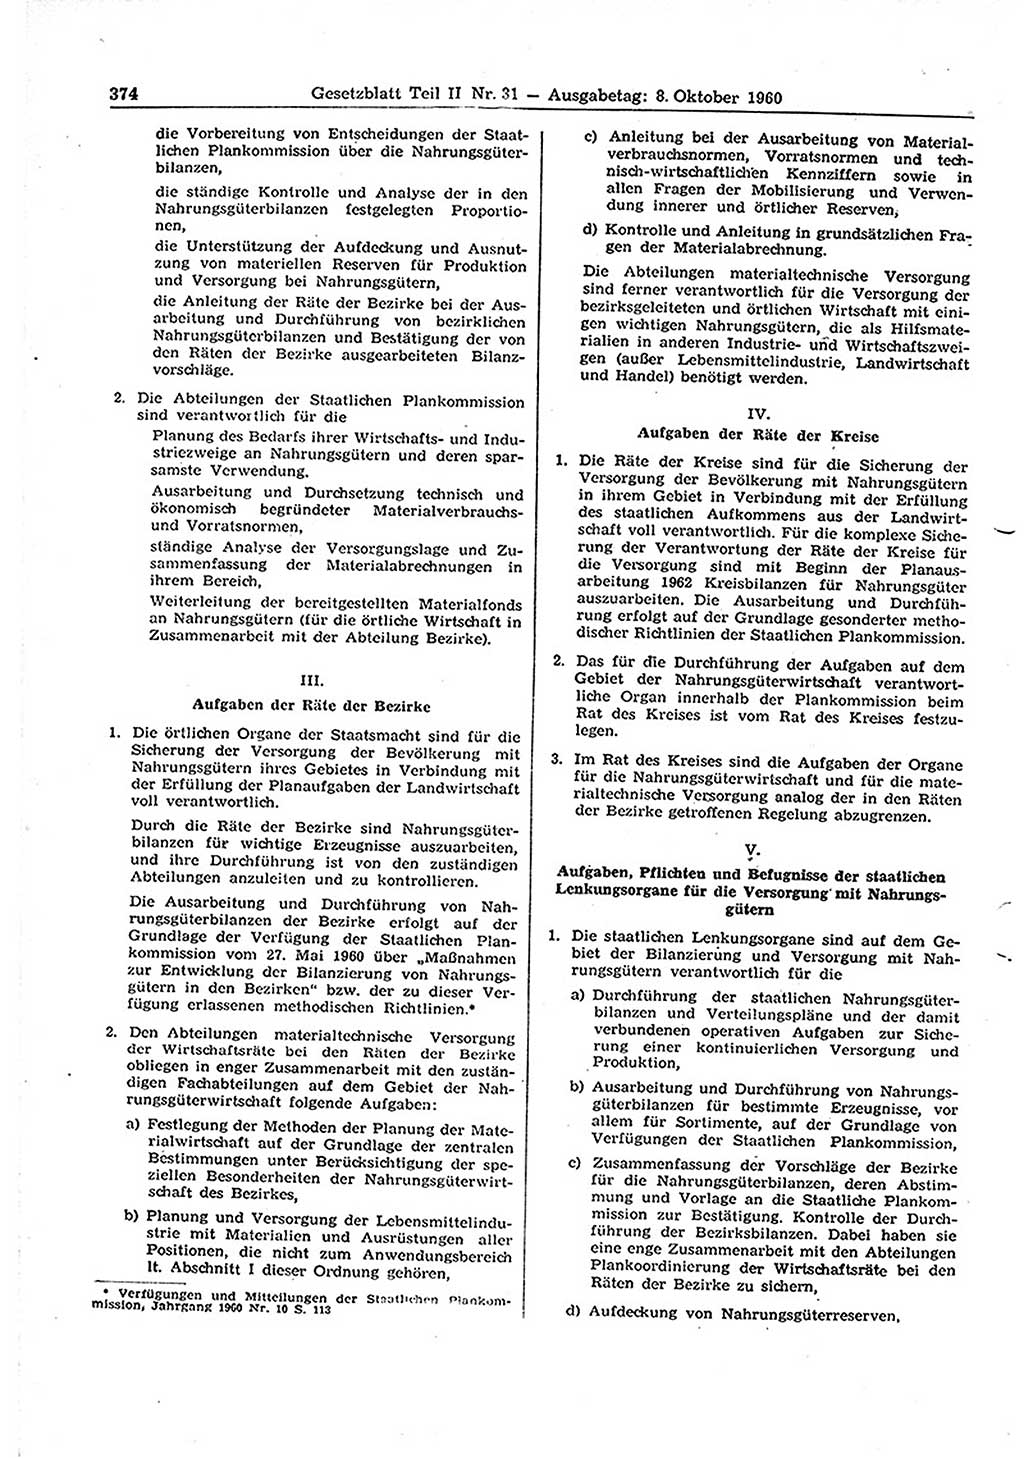 Gesetzblatt (GBl.) der Deutschen Demokratischen Republik (DDR) Teil ⅠⅠ 1960, Seite 374 (GBl. DDR ⅠⅠ 1960, S. 374)